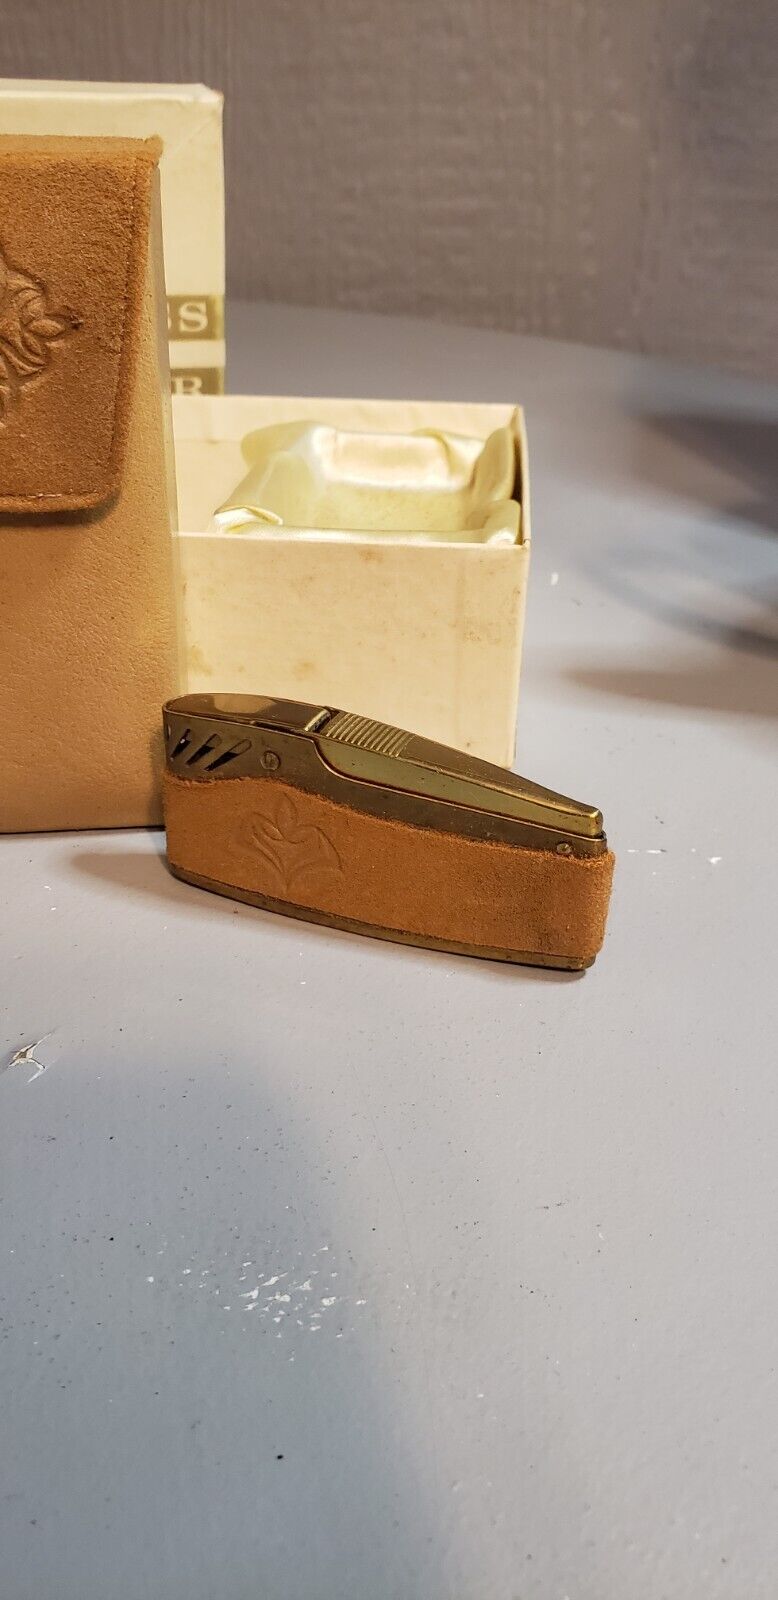 Princess Gardner Cigarette Case and Lighter in working order